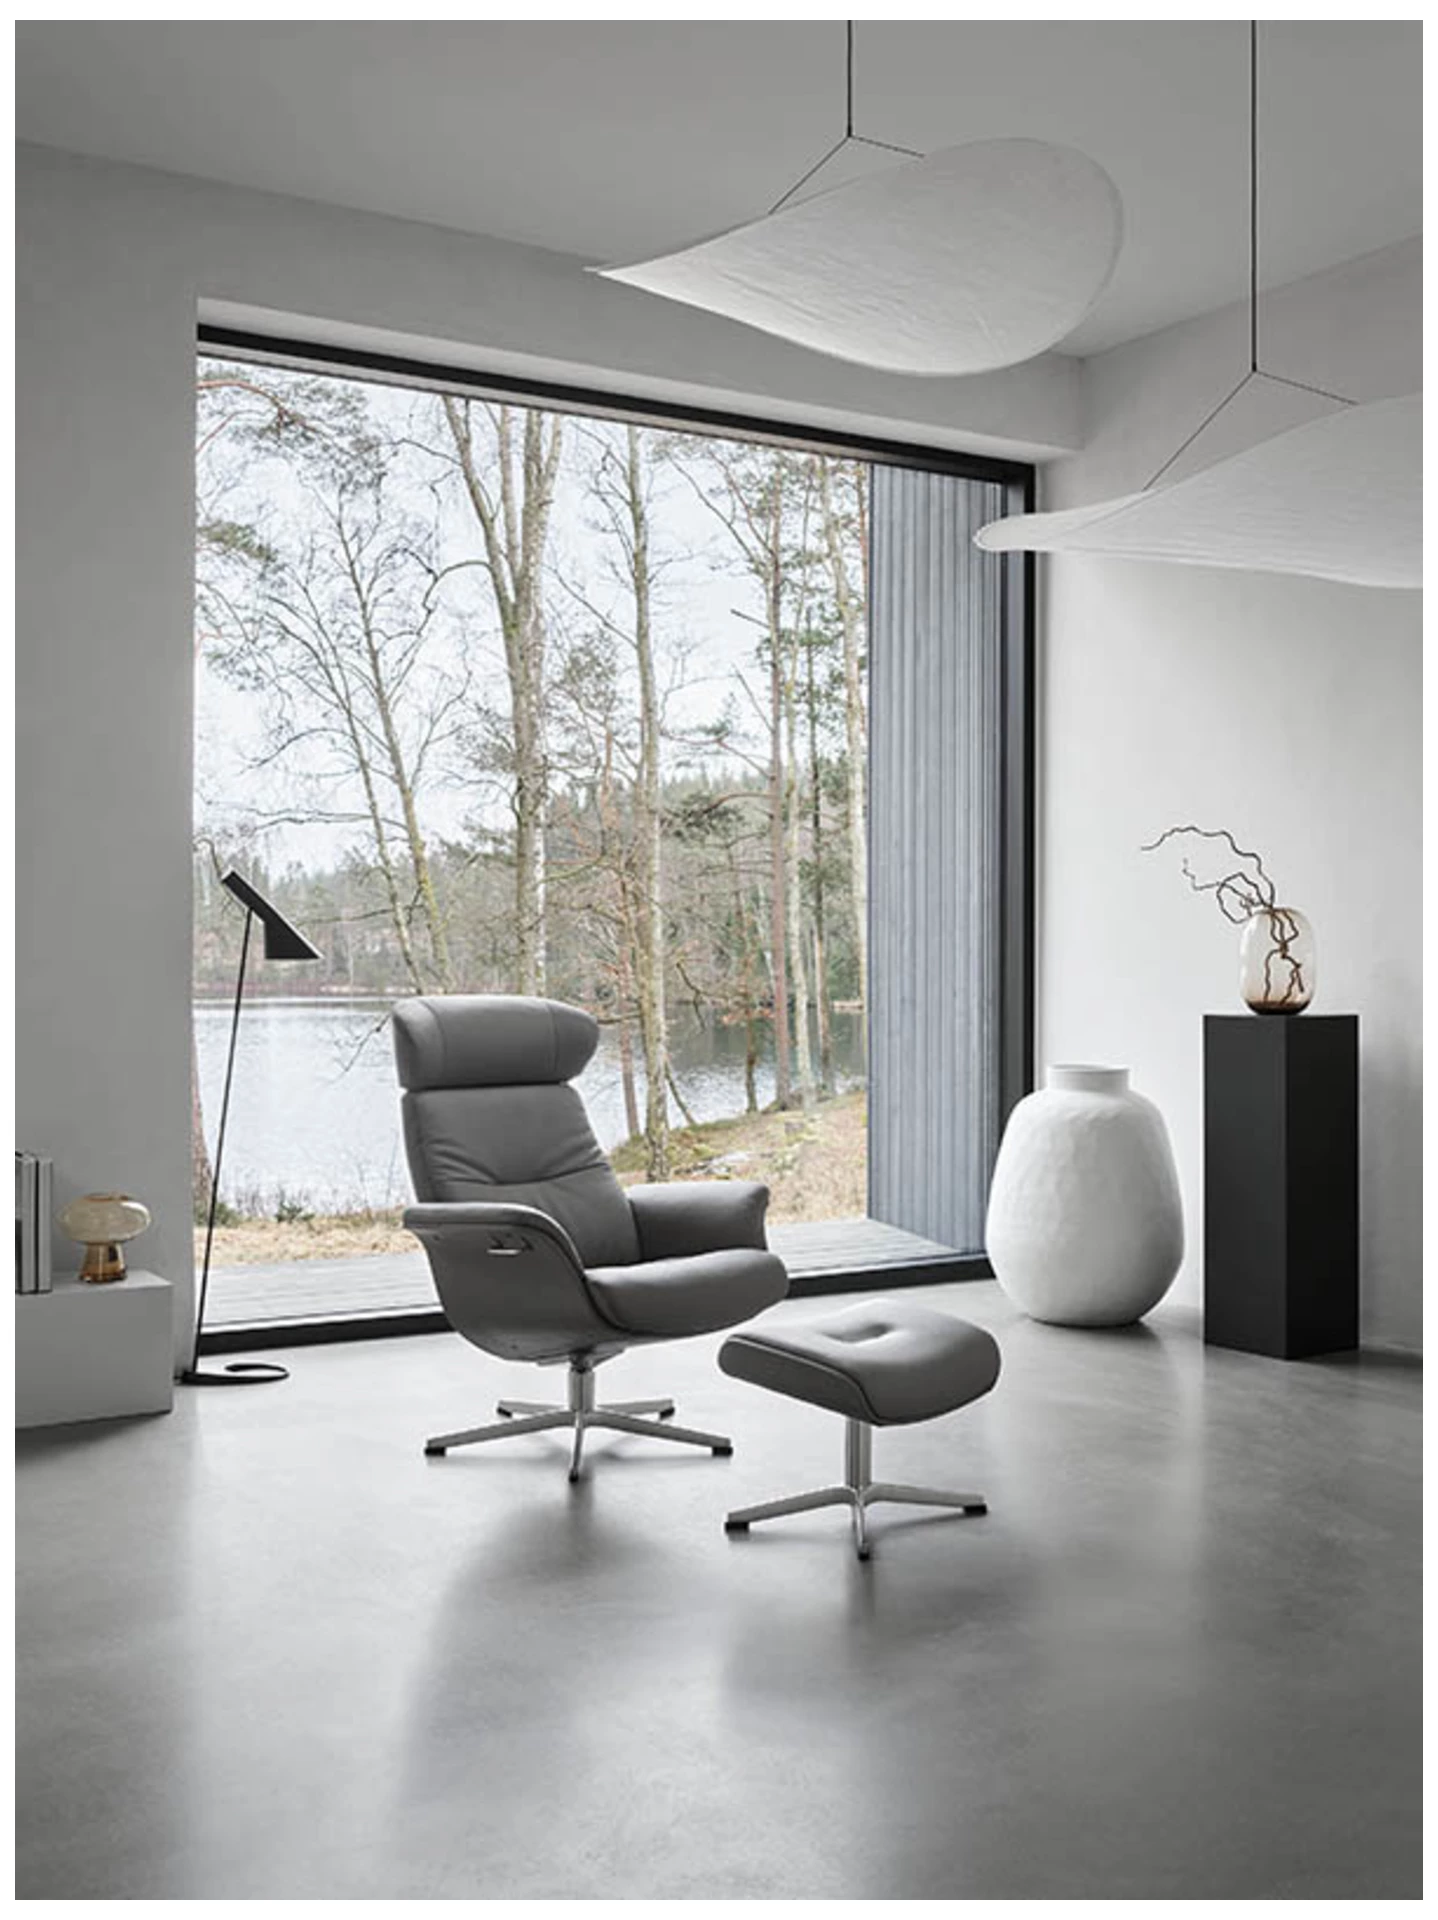 Relaxer+hocker Time Out, Leder Schwarz, Alu-Kreuzfuss, Eames Chair